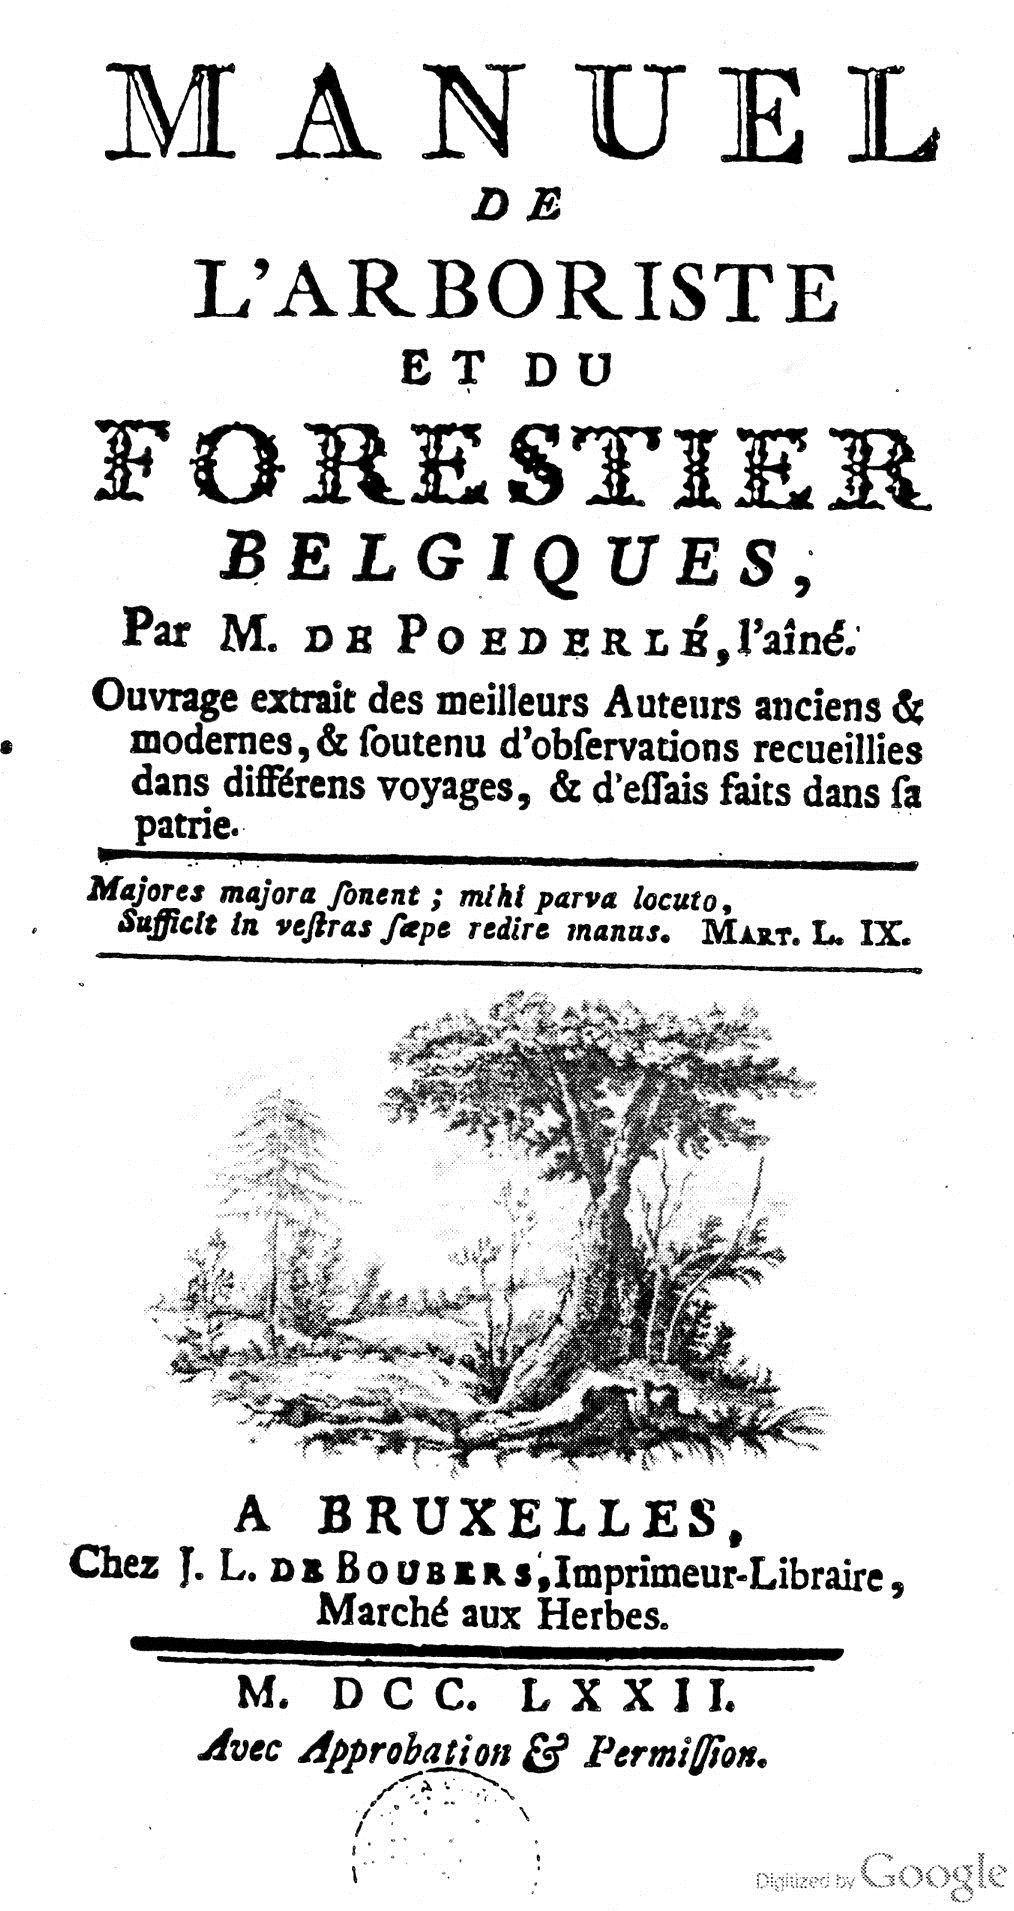 La page titre du travail pionnier de de Poederlée (1742-1813) sur les arbres et arbustes de Belgique